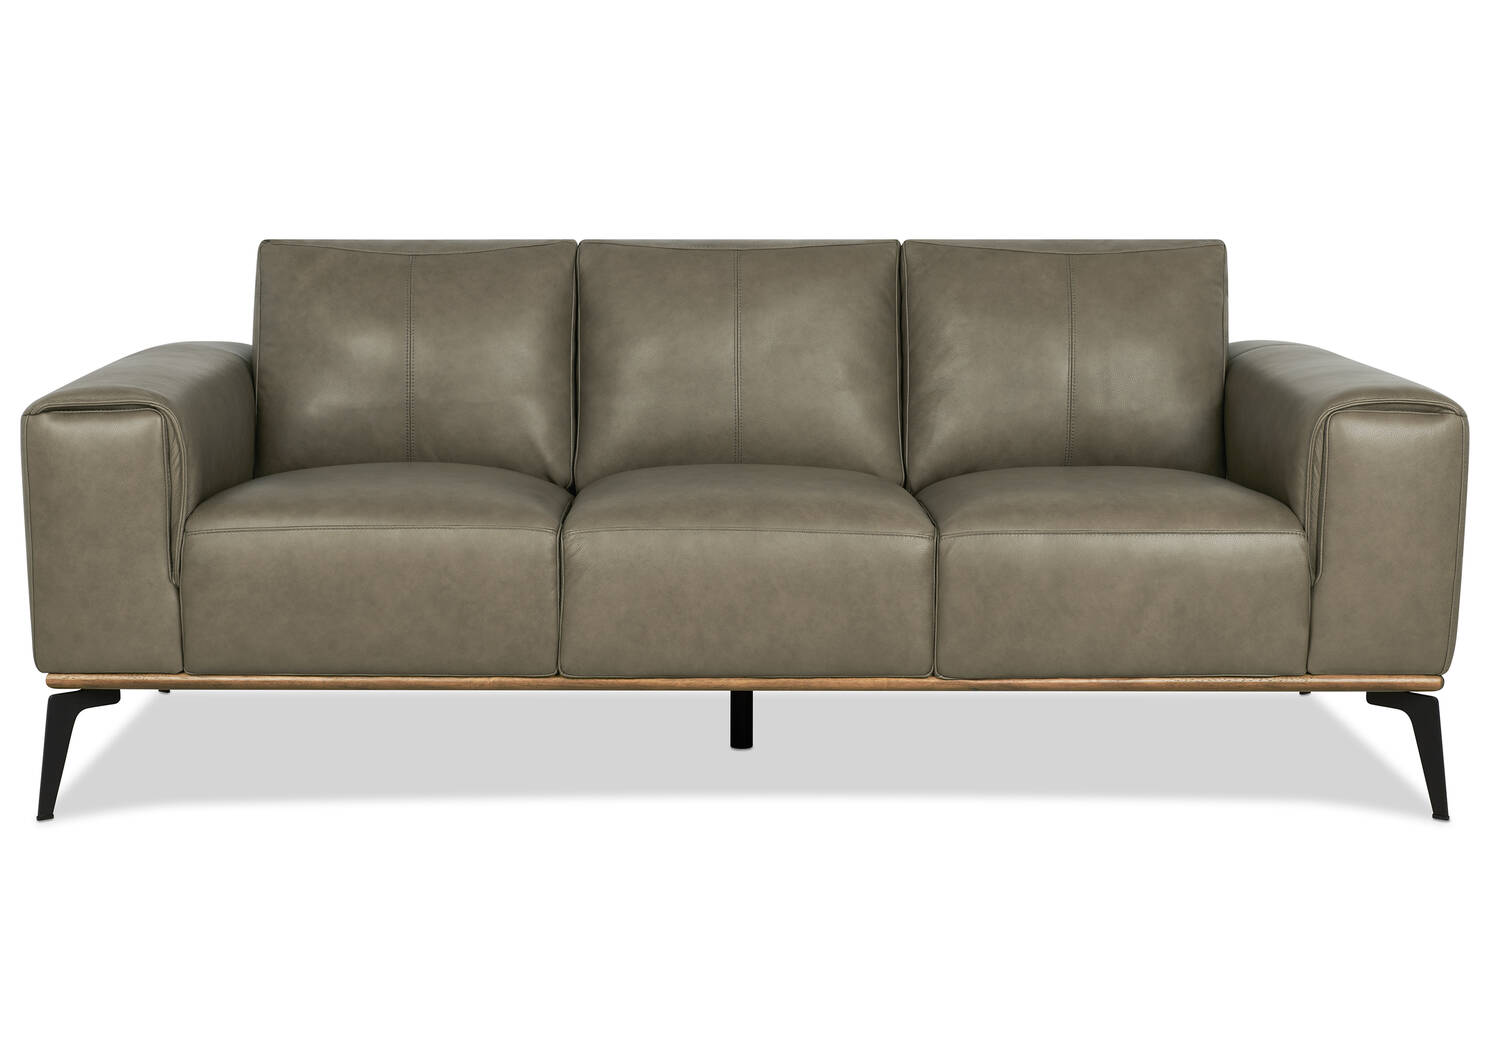 Alton Leather Sofa